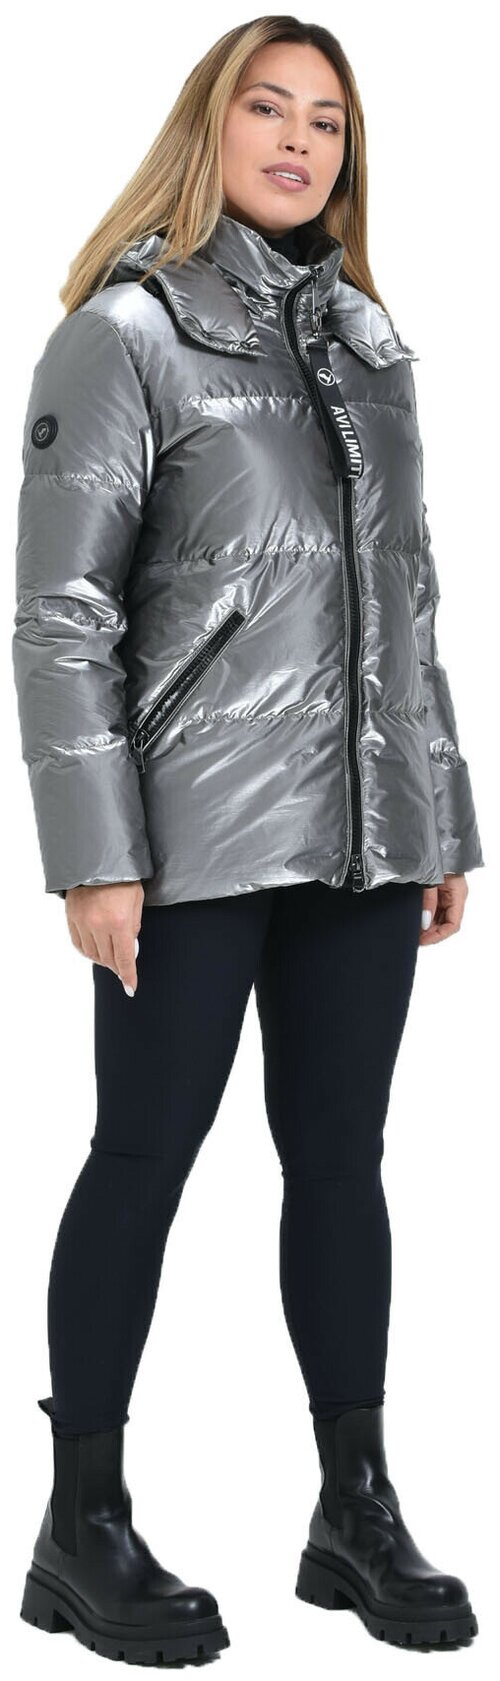 Куртка  AVI зимняя, средней длины, силуэт прямой, съемный капюшон, внутренний карман, манжеты, размер 44(50RU)